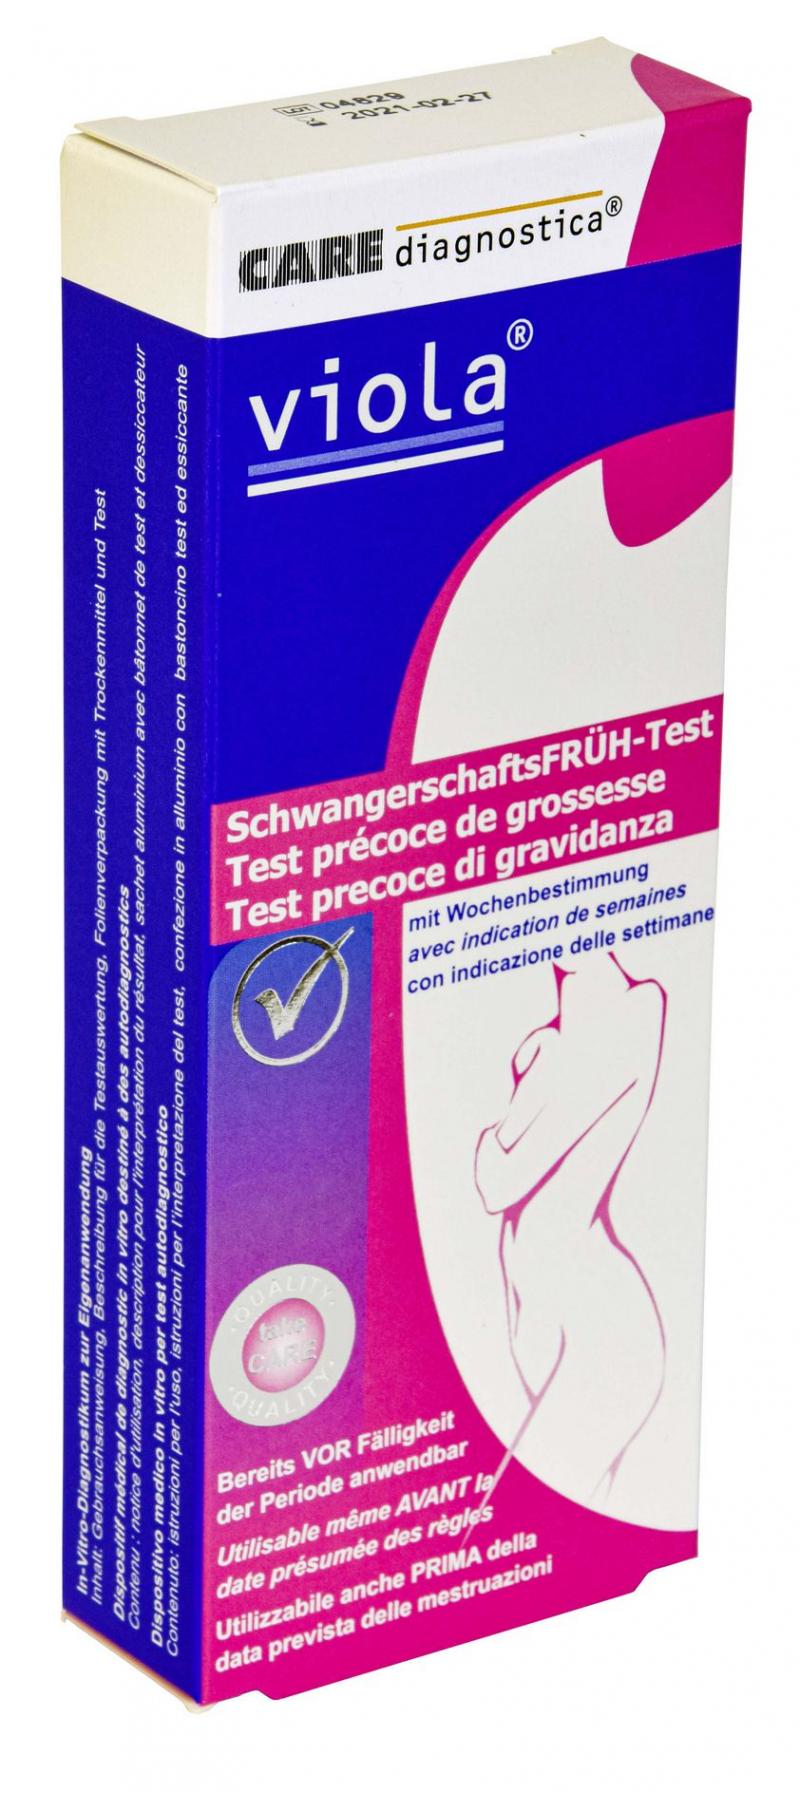 Viola Schwangerschaftsfrüh-Test